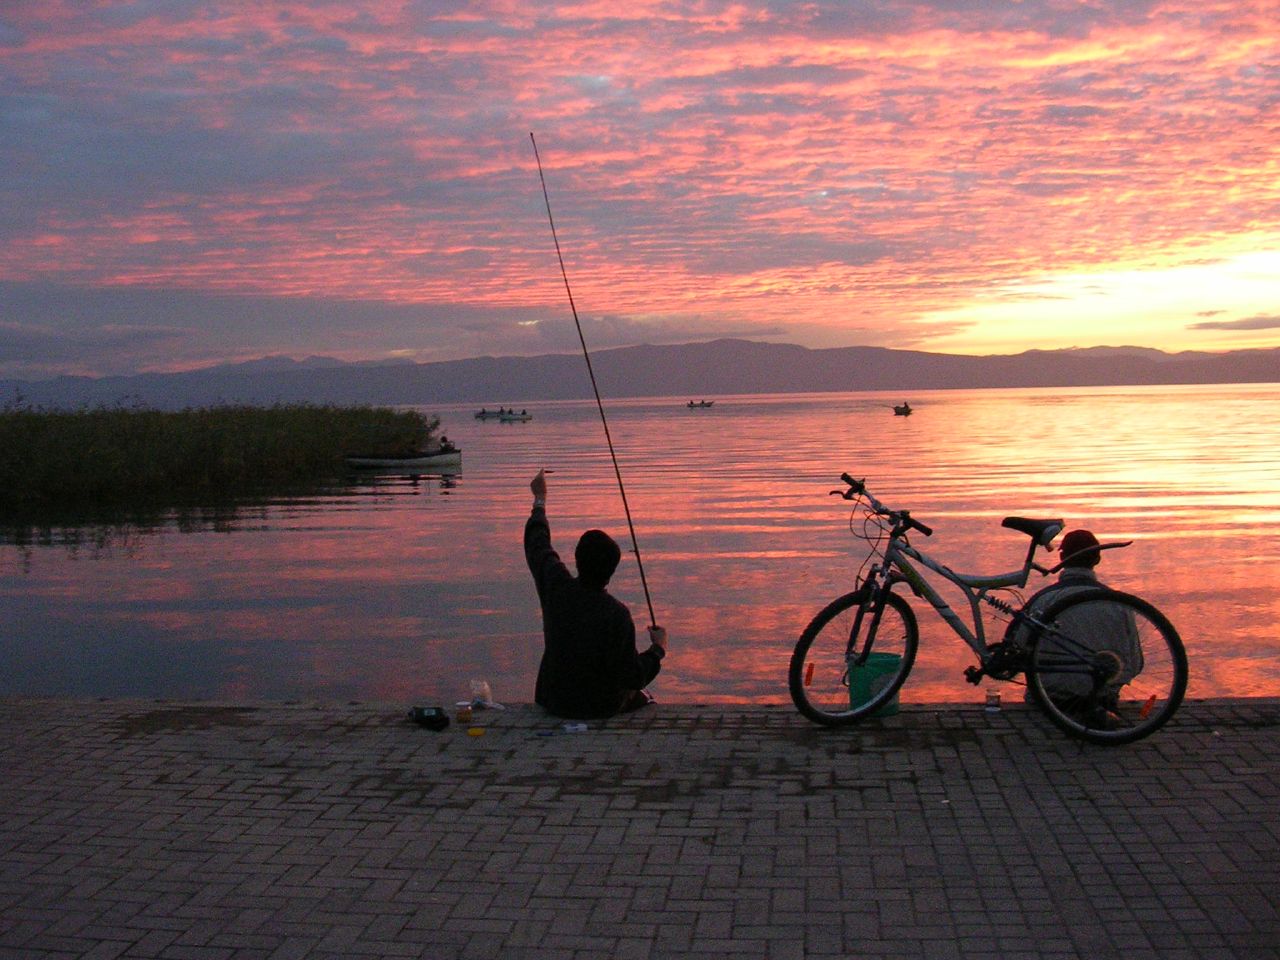 Fishing at Lake Ohrid, Macedonia